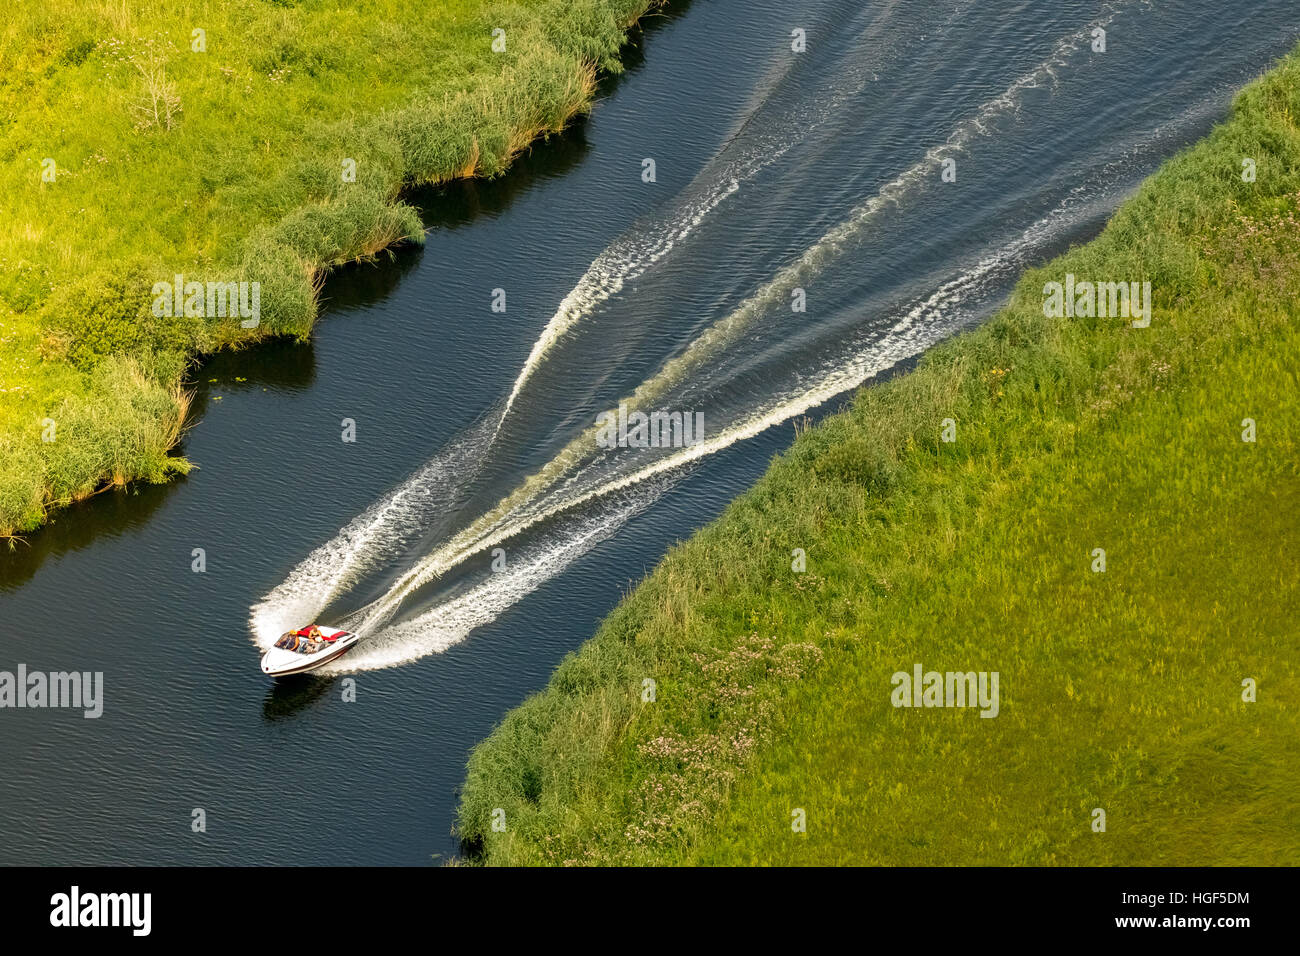 Vue aérienne, bateau à moteur sur la rivière Peene, Plateau des lacs Mecklembourgeois, Mecklembourg-Poméranie-Occidentale, Allemagne Banque D'Images